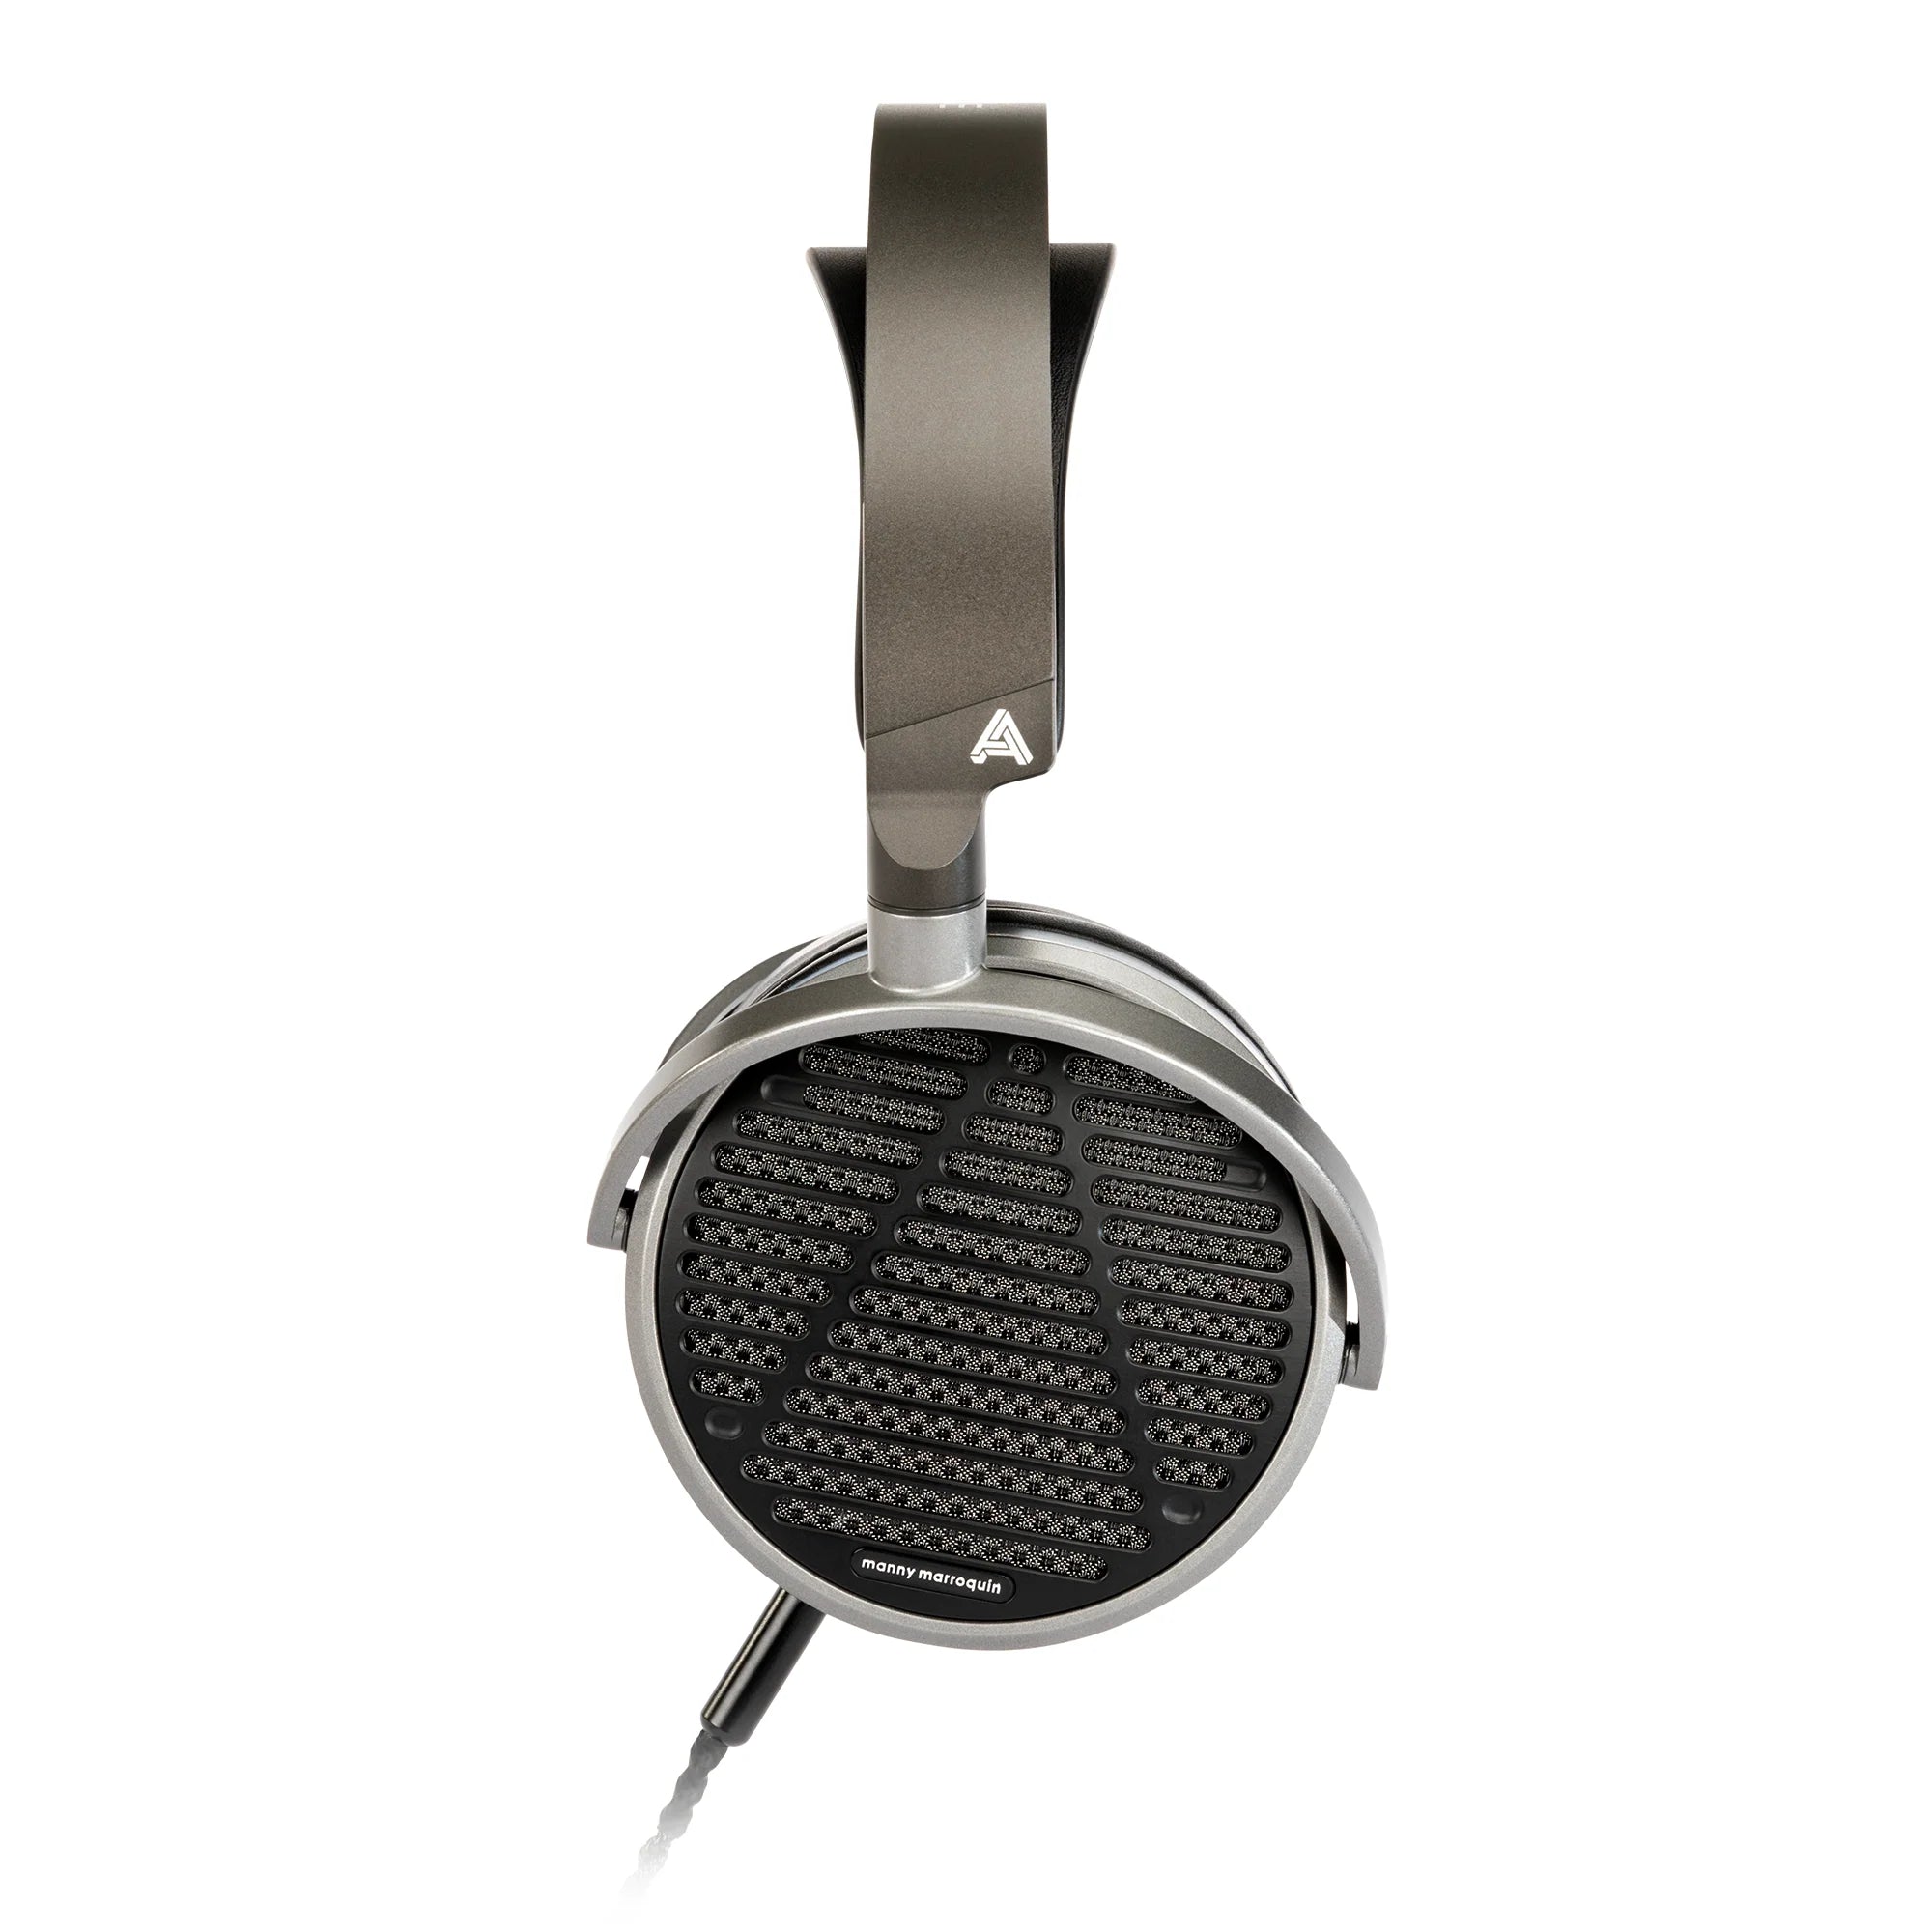 Audeze MM-100 open-back headphones